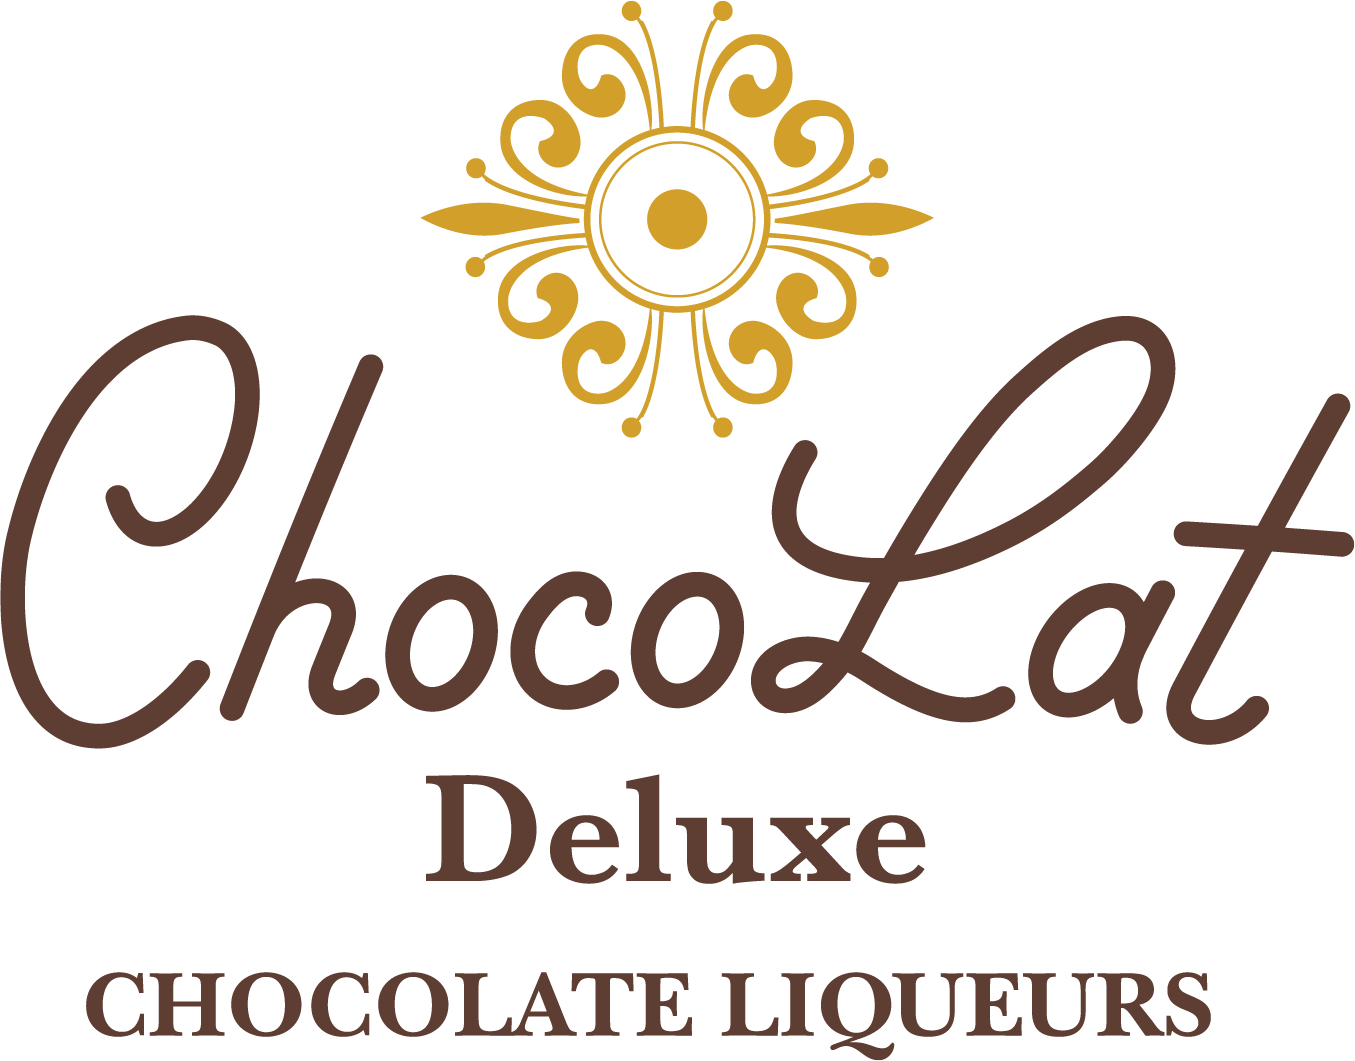 ChocoLat Deluxe Chocolate Liqueurs – M.S. Walker